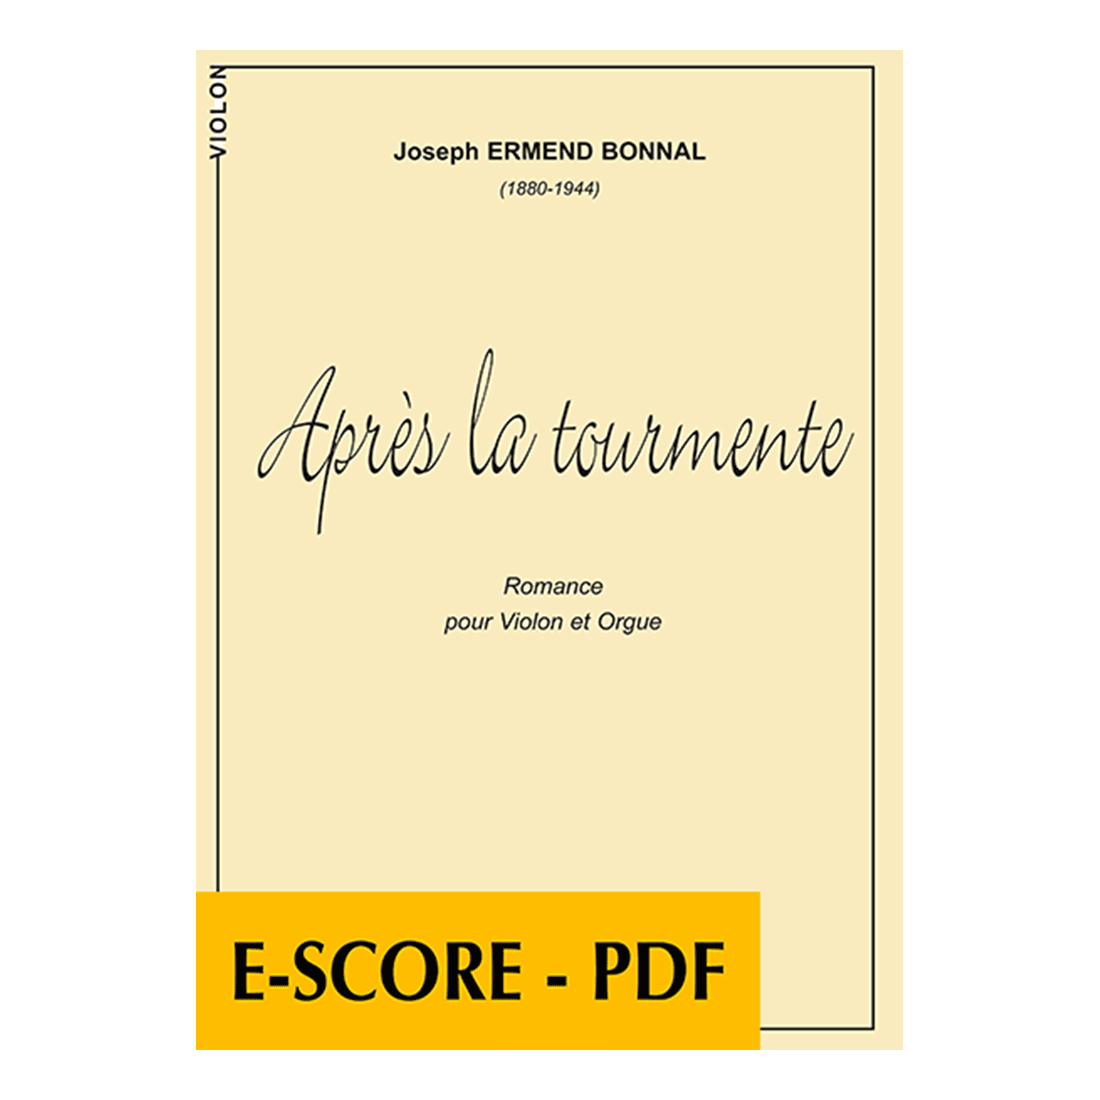 Après la tourmente für Violine und Orgel - E-score PDF